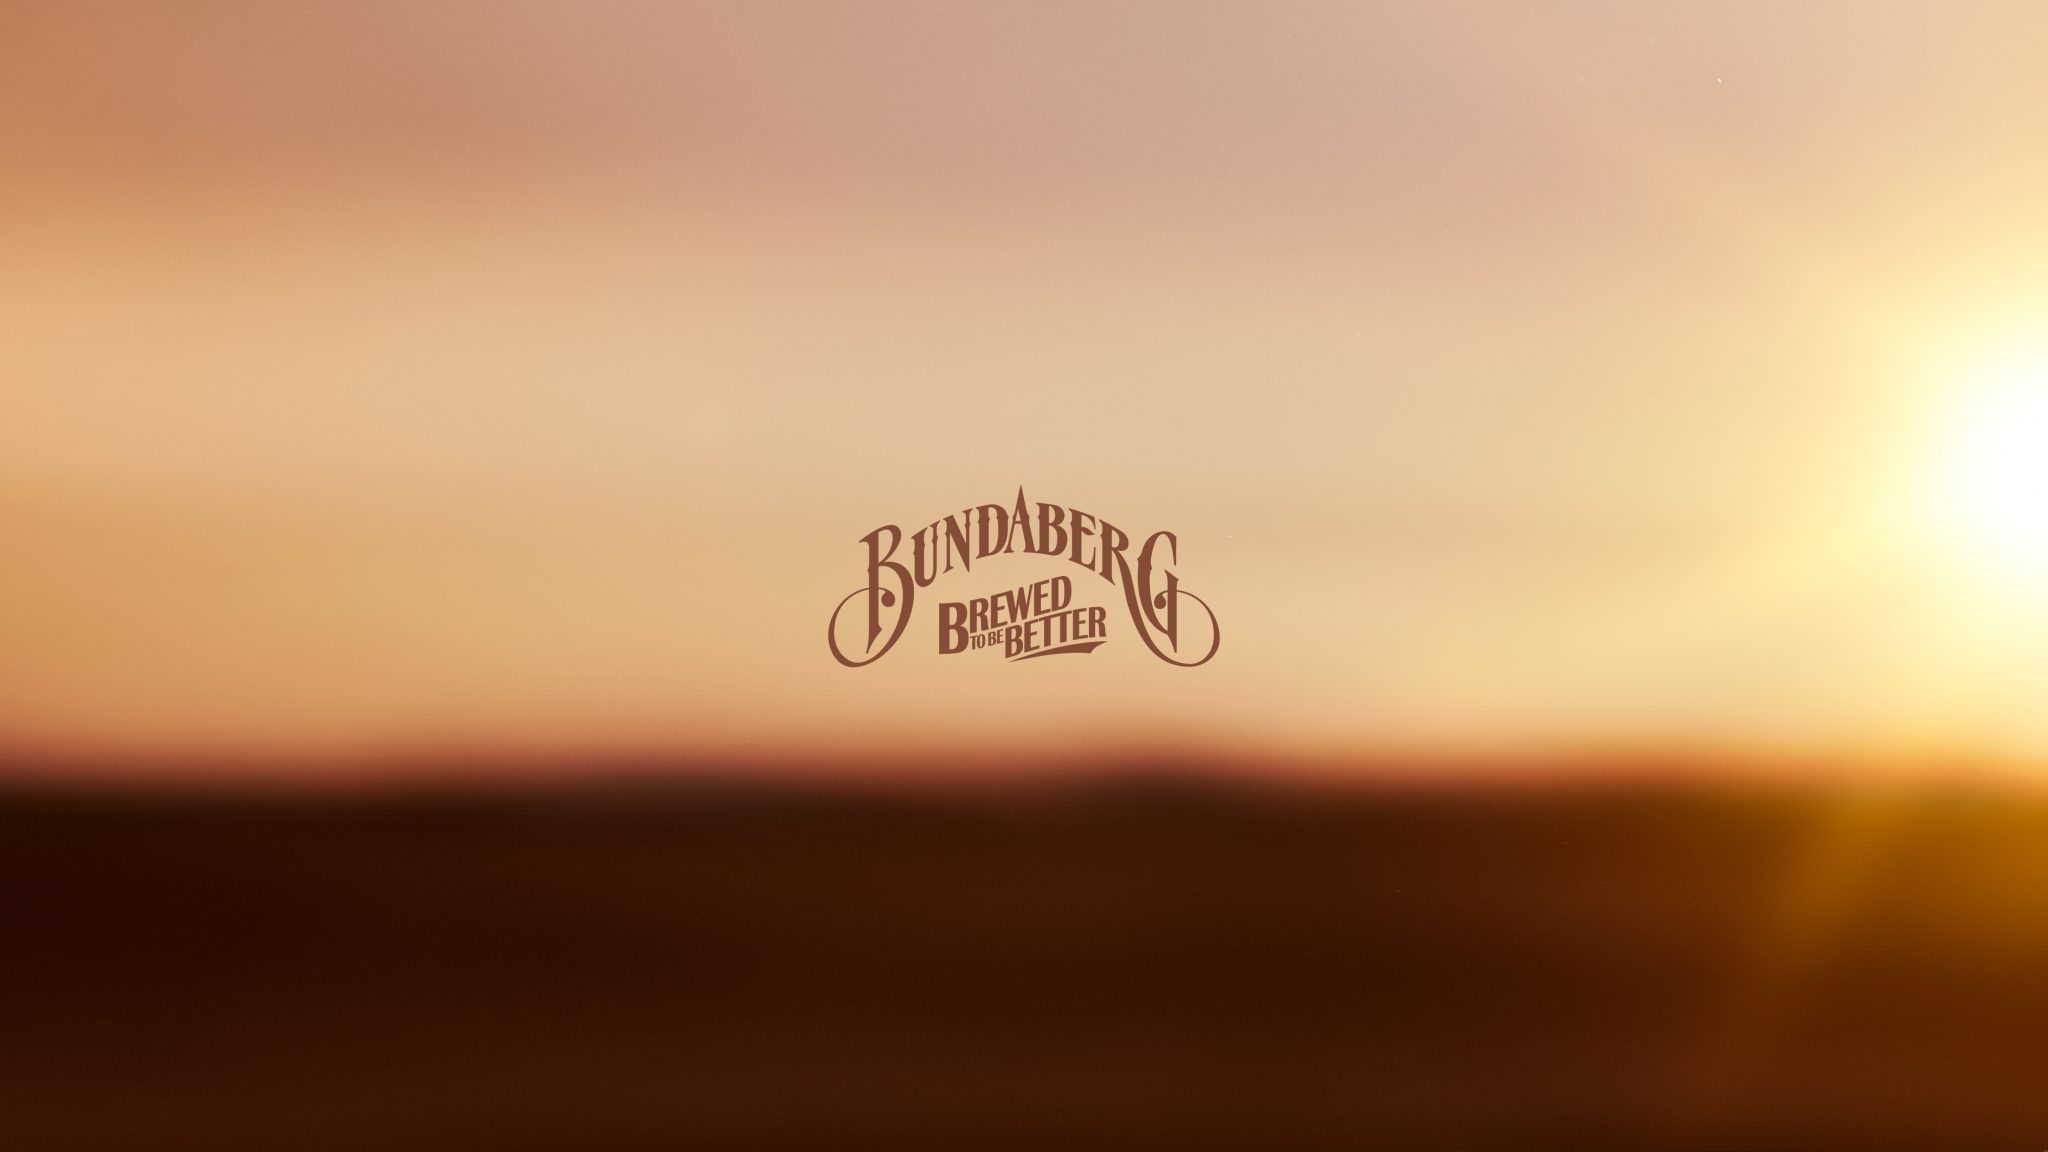 Brand campaign for Bundaberg Ginger Beer